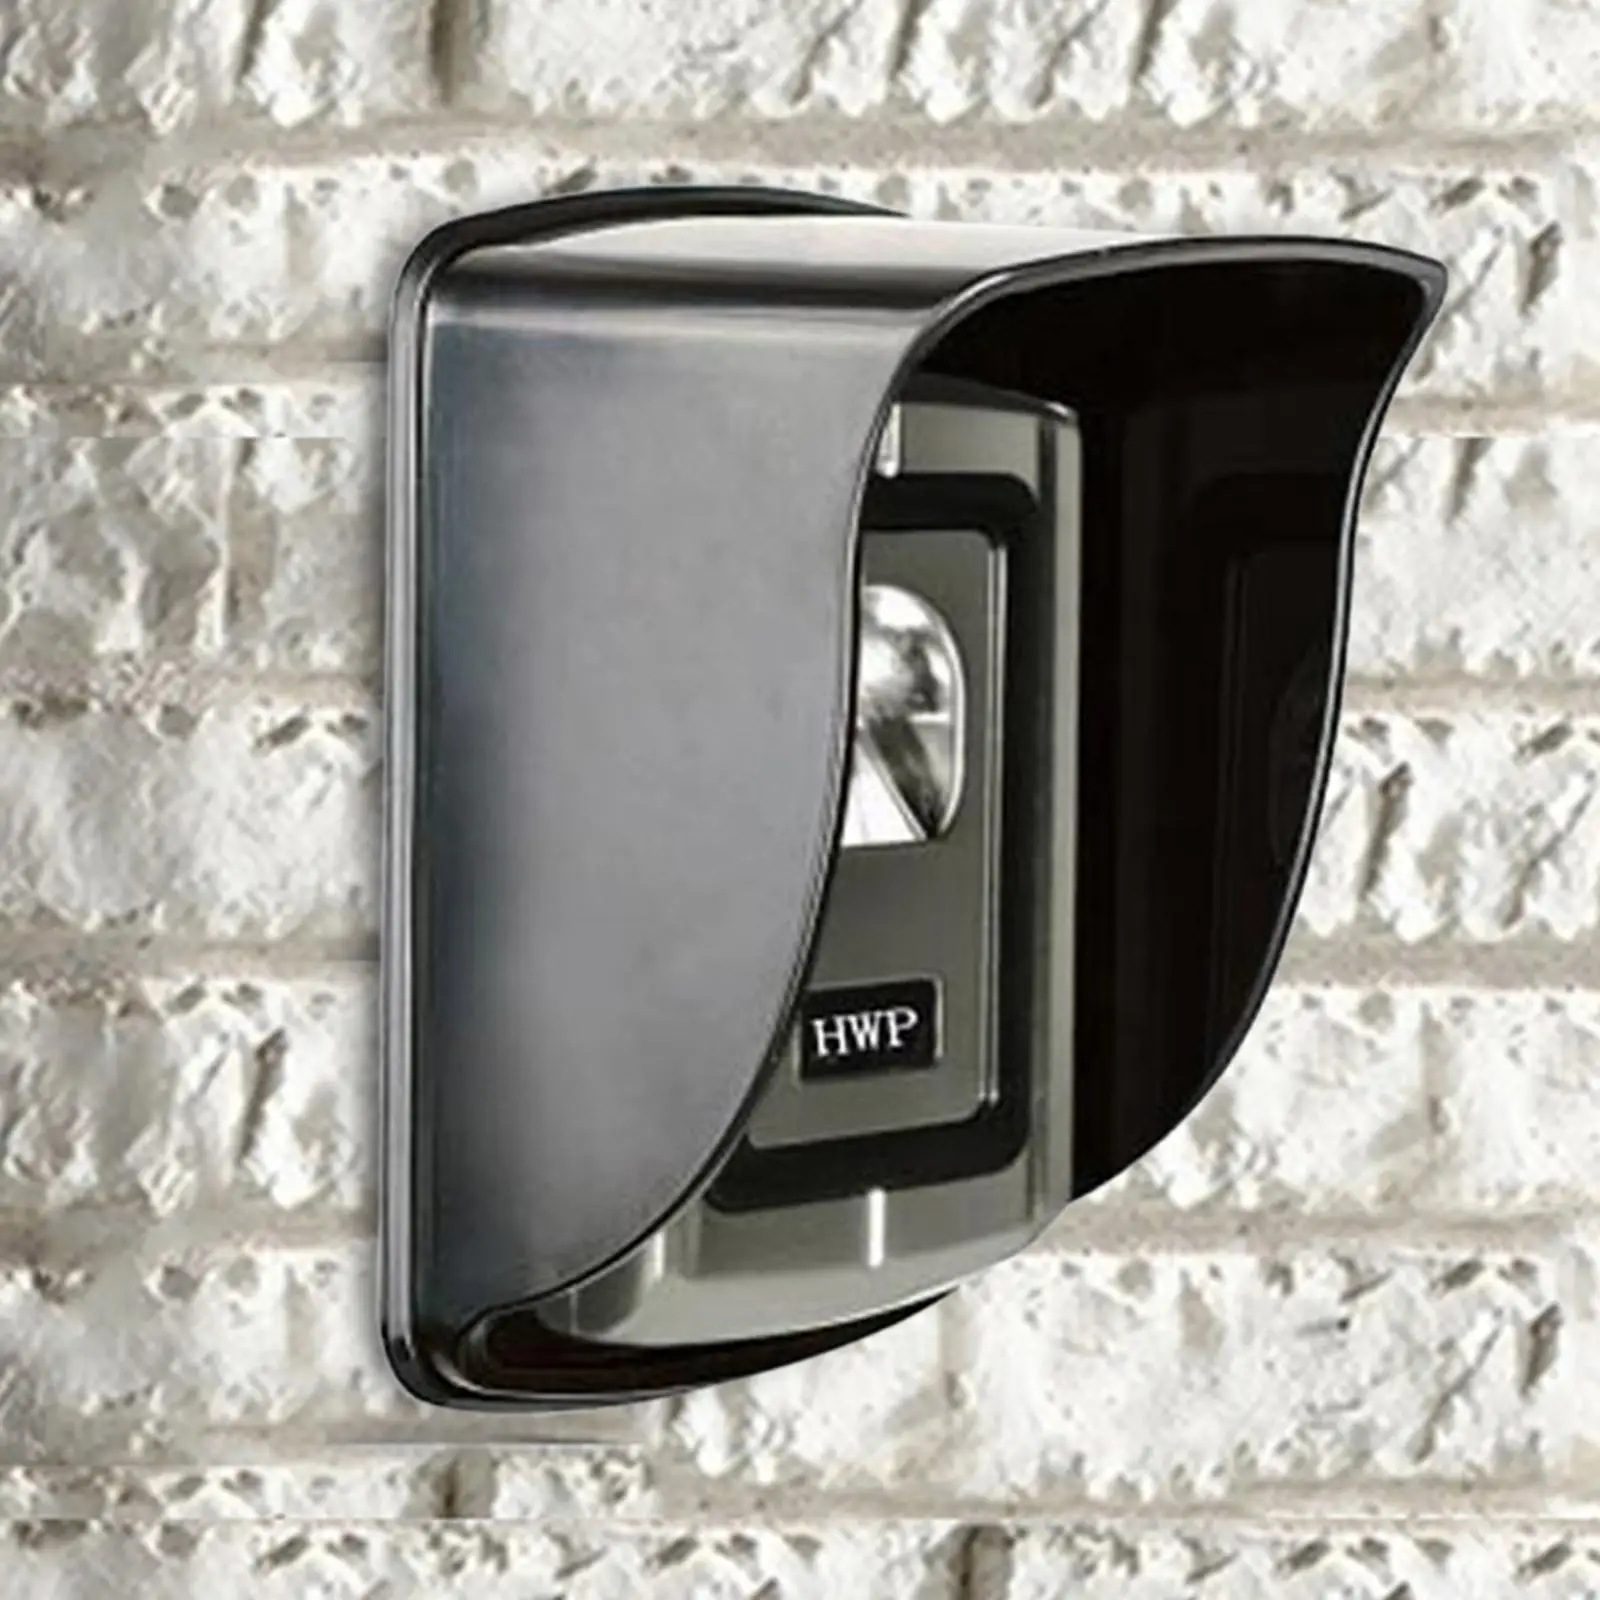 Doorbell Rain Cover Protector for Door Phone Intercom Bell Button Fingerprint Access Controller Wireless Doorbell Video Doorbell